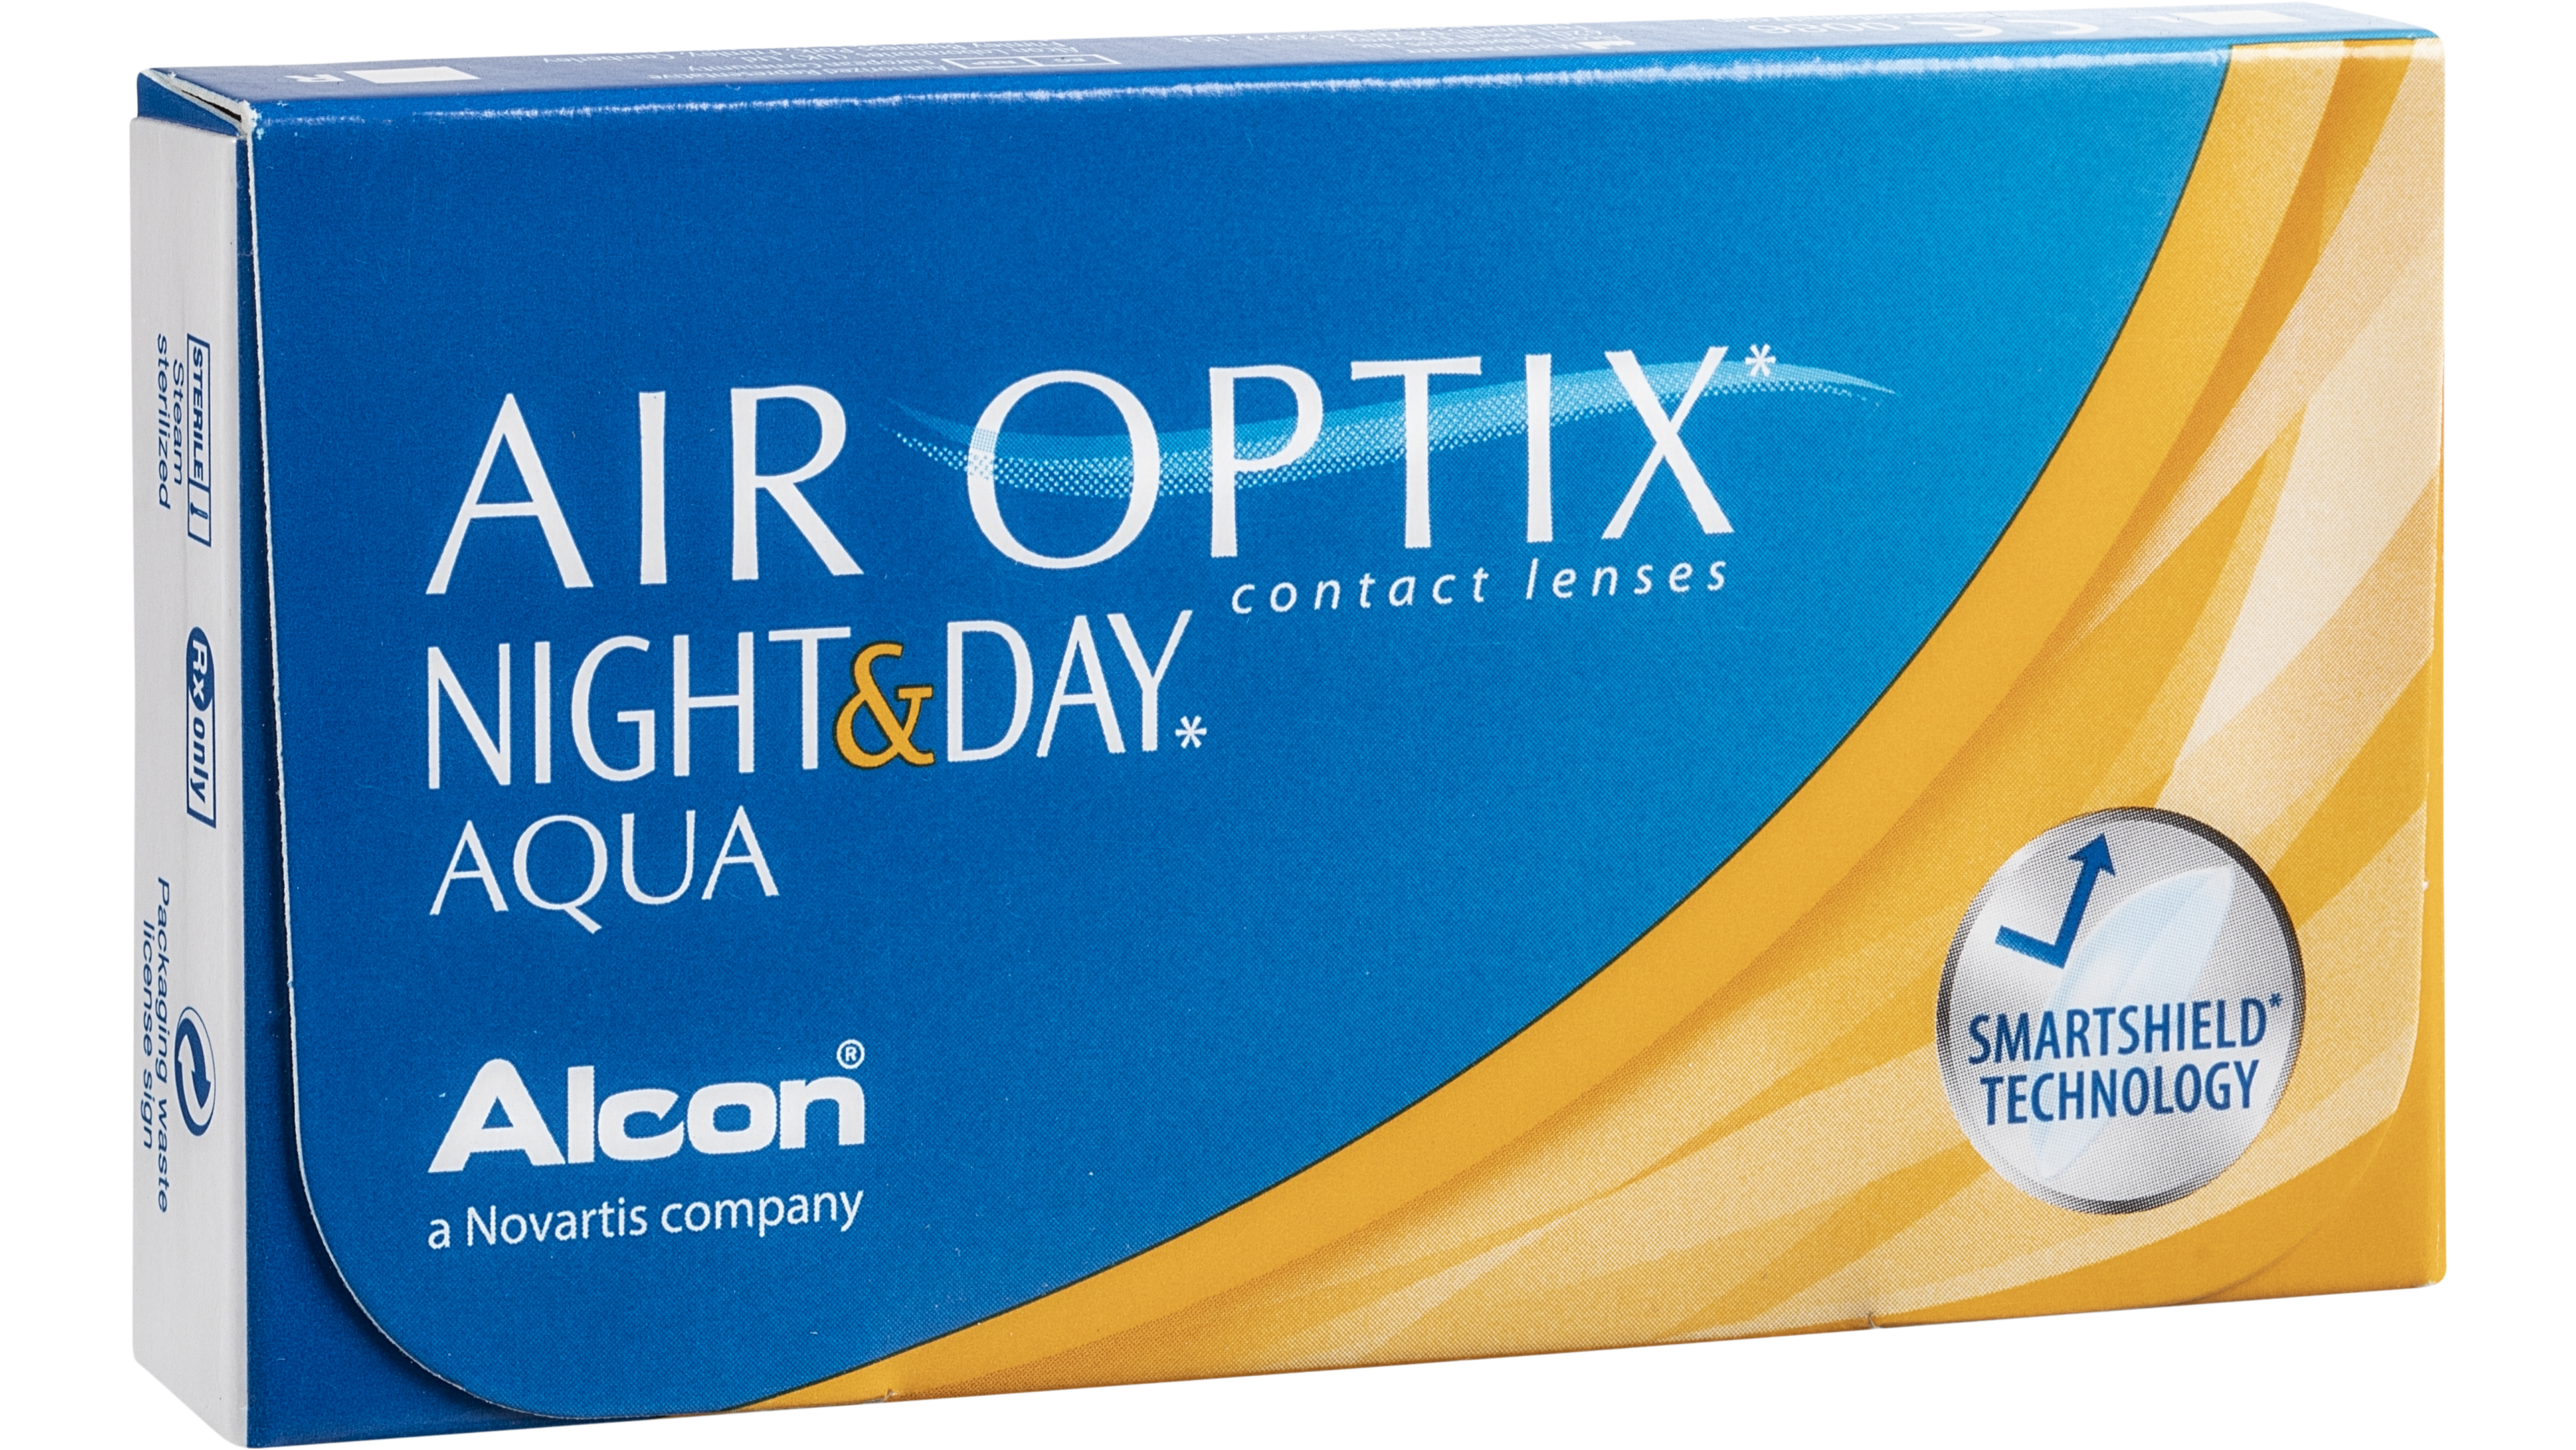 Angle_Right01 Air Optix Air Optix Night&Day Aqua 6 unidades Mensuales 6 lentillas por caja